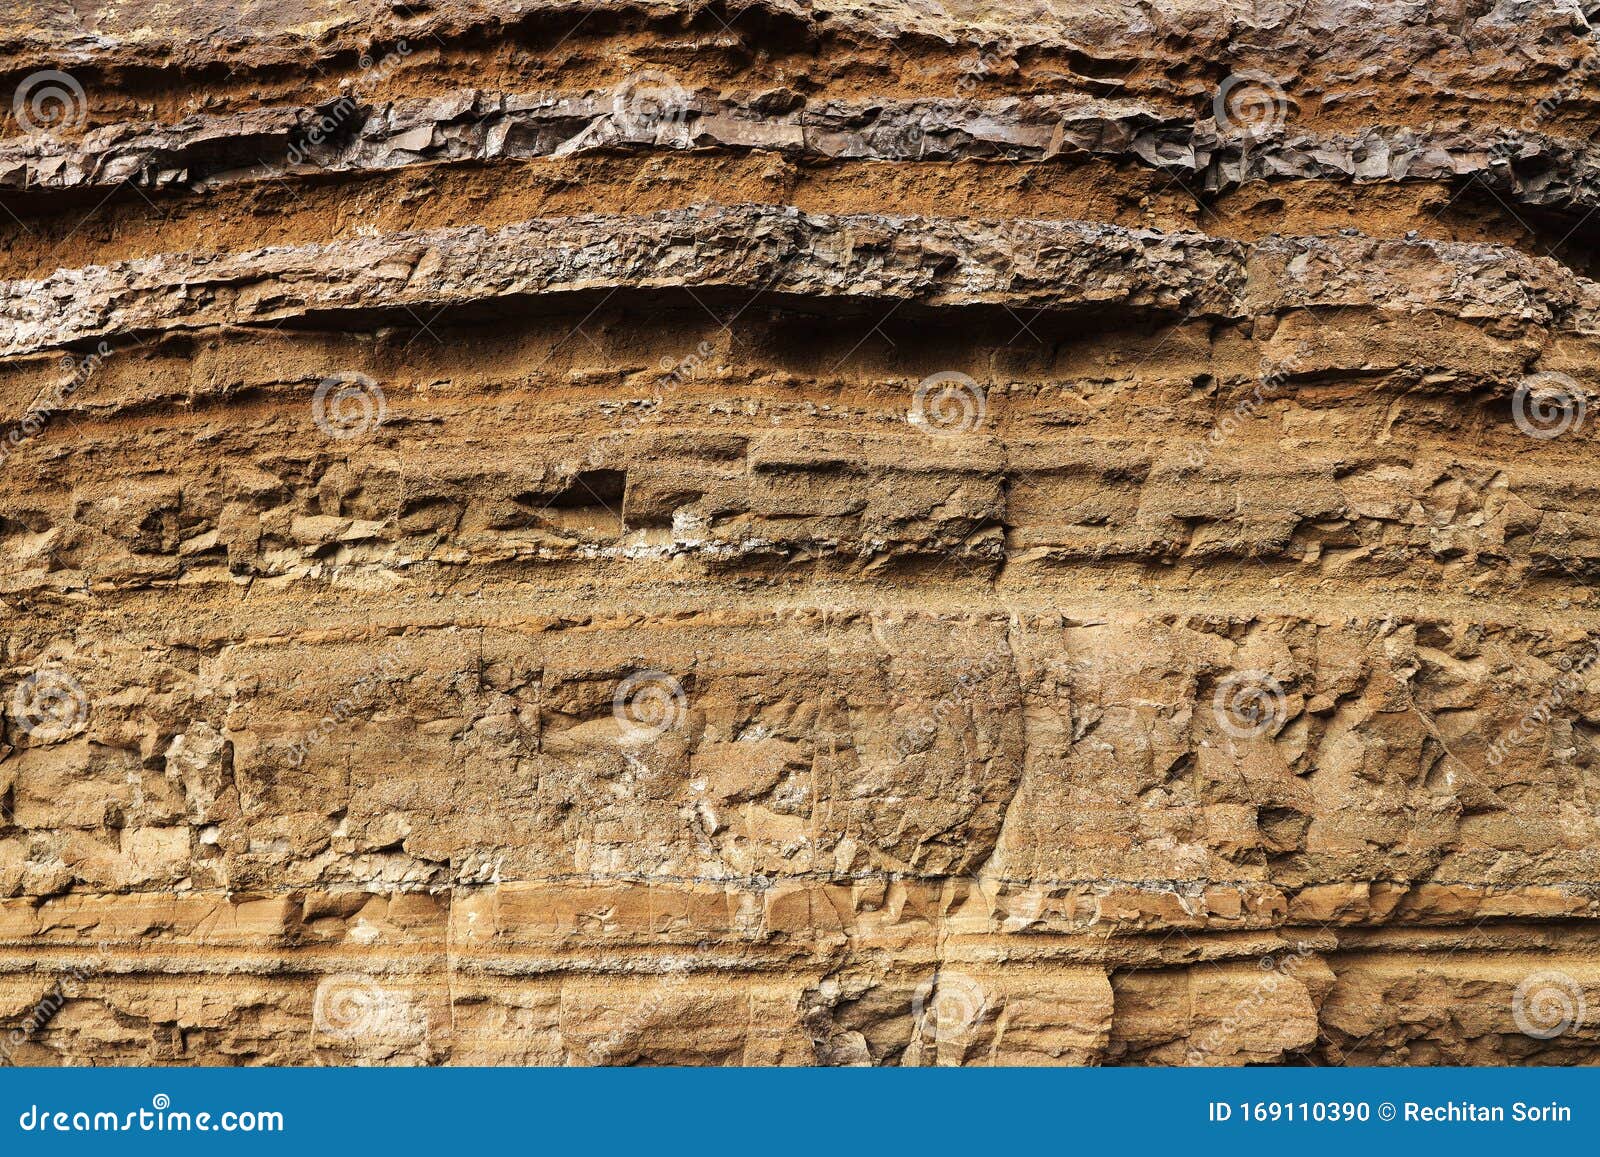 Cite Dois Exemplos De Rochas Metamórficas Sedimentares E Ígneas